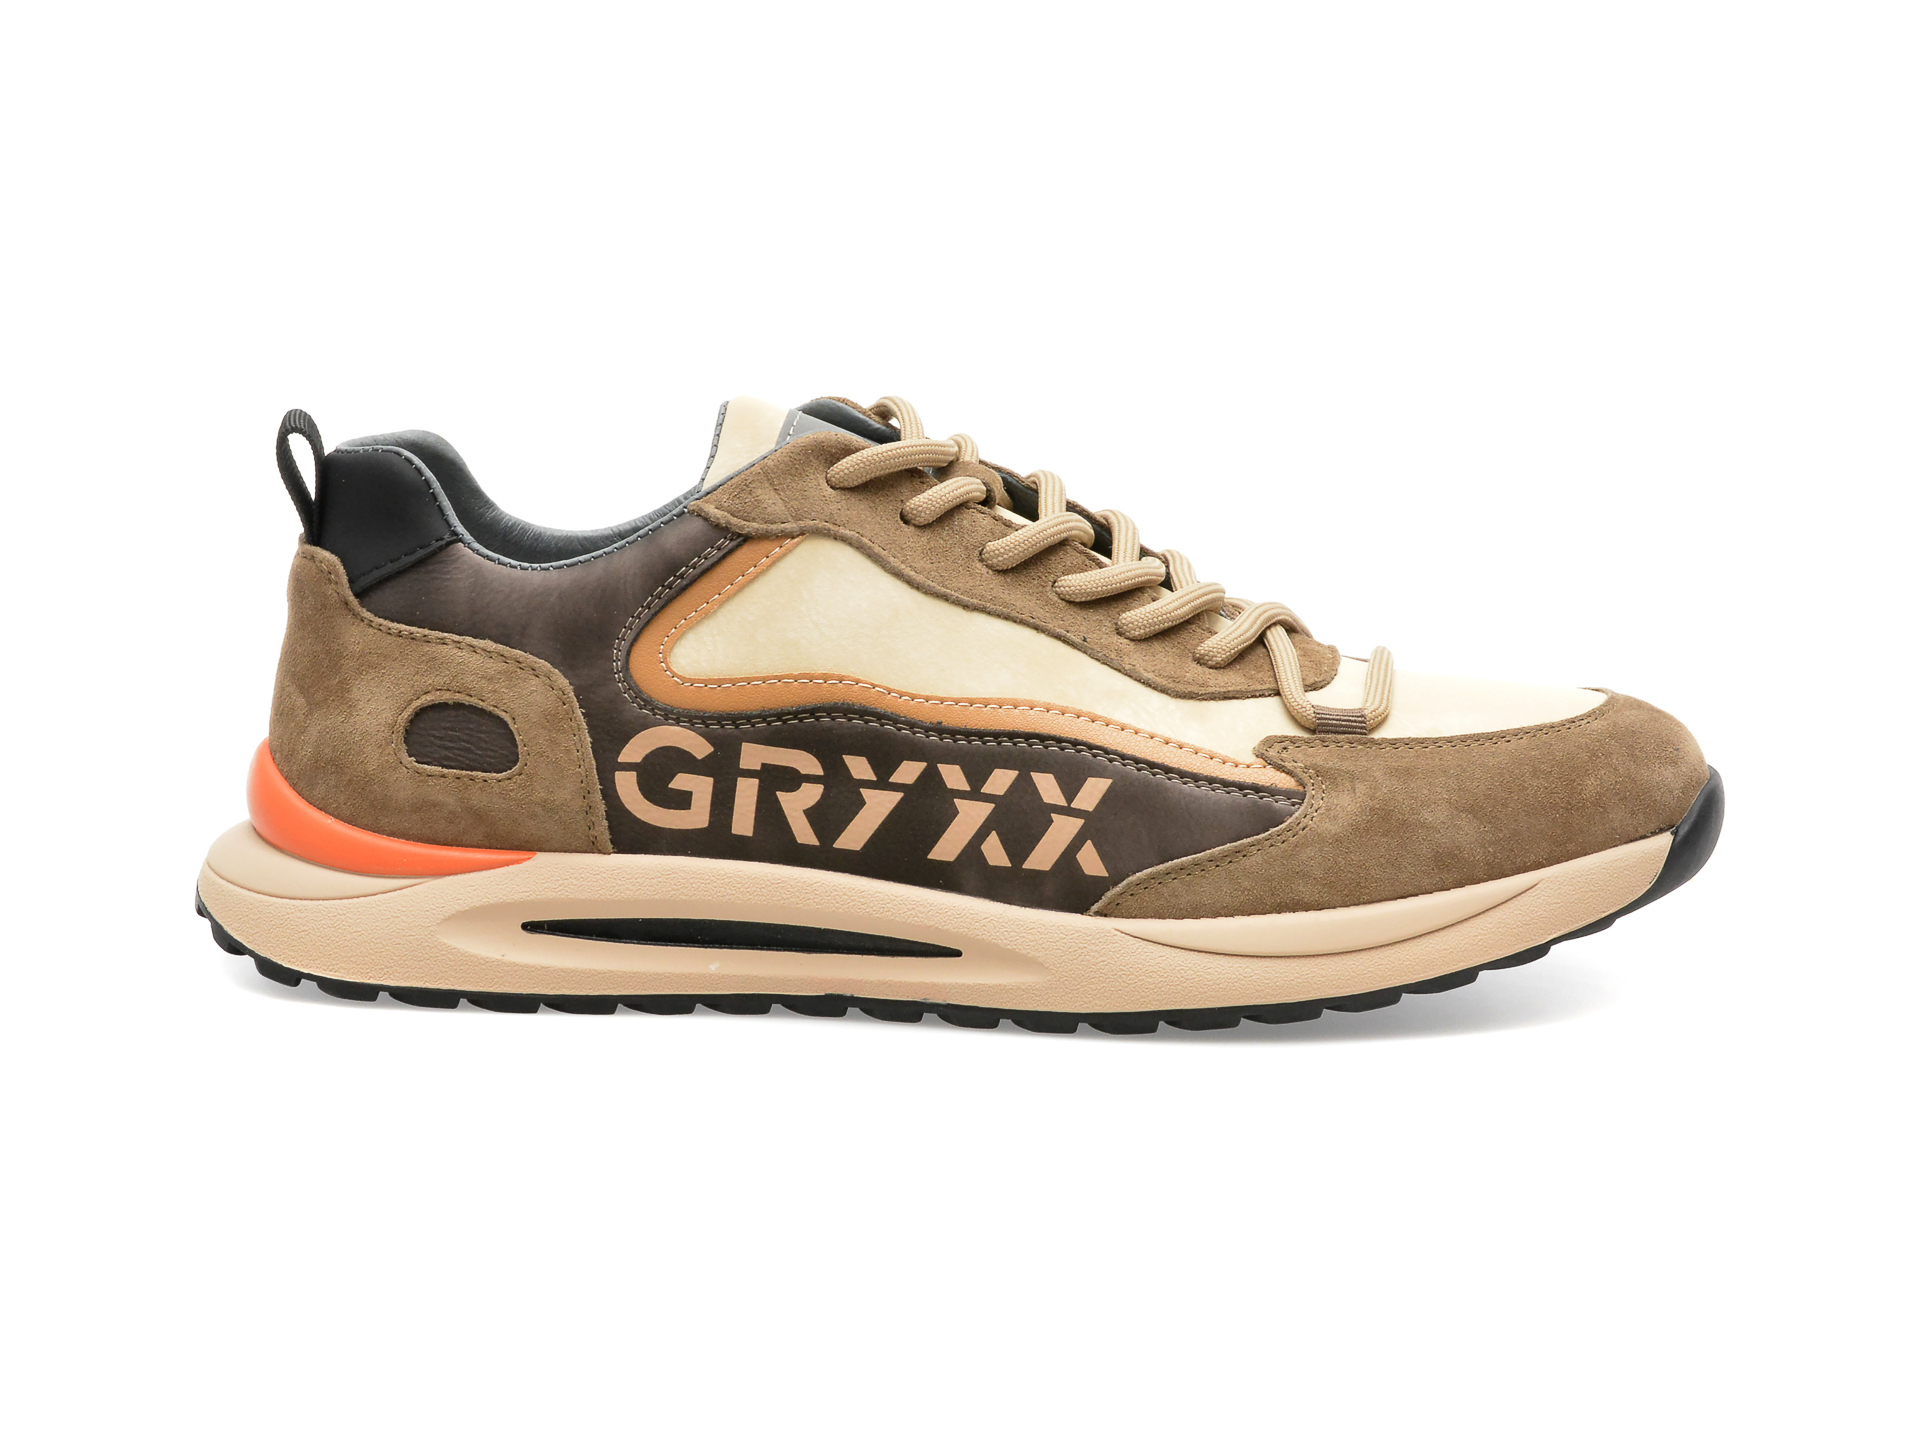 Pantofi Gryxx Albi, 3033, Din Piele Naturala